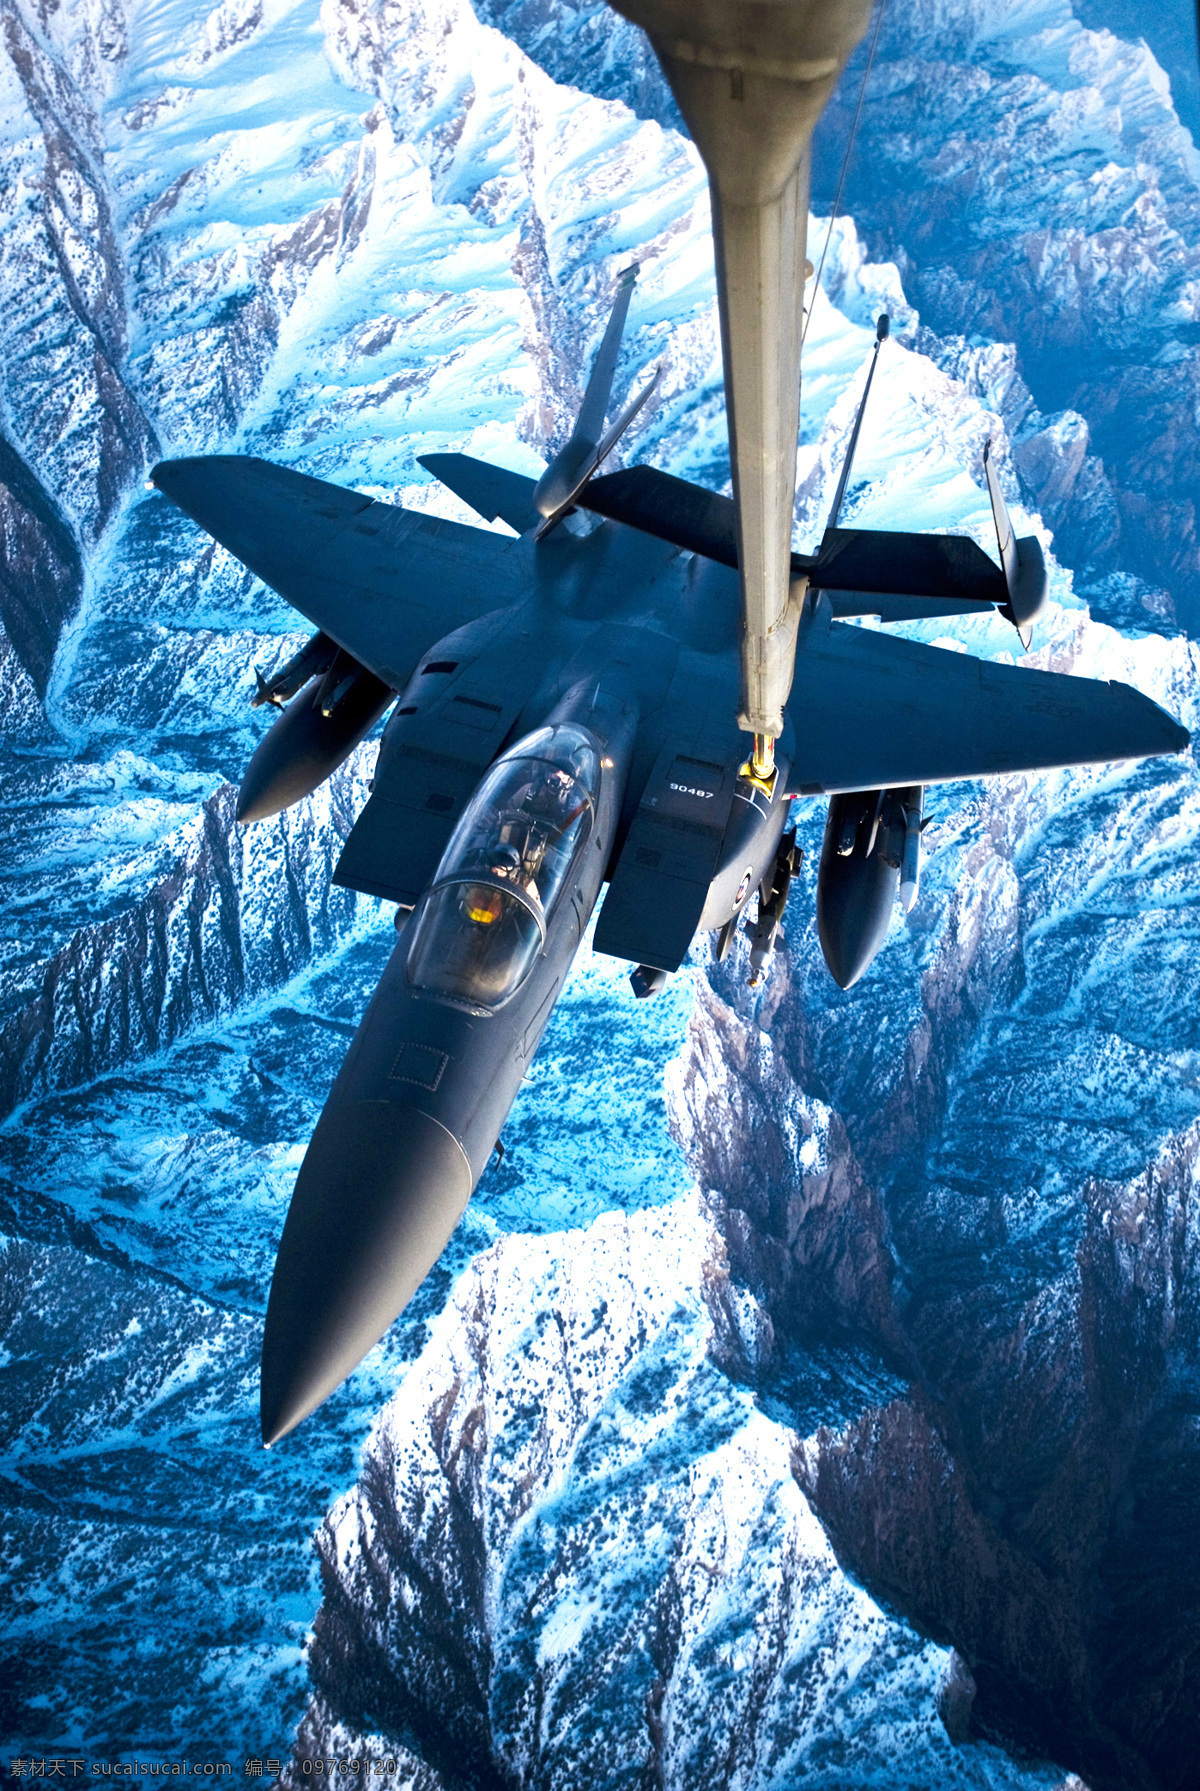 f22 战斗机 美国空军 军事 武器 飞机 空中力量 rgb颜色 军事武器 现代科技